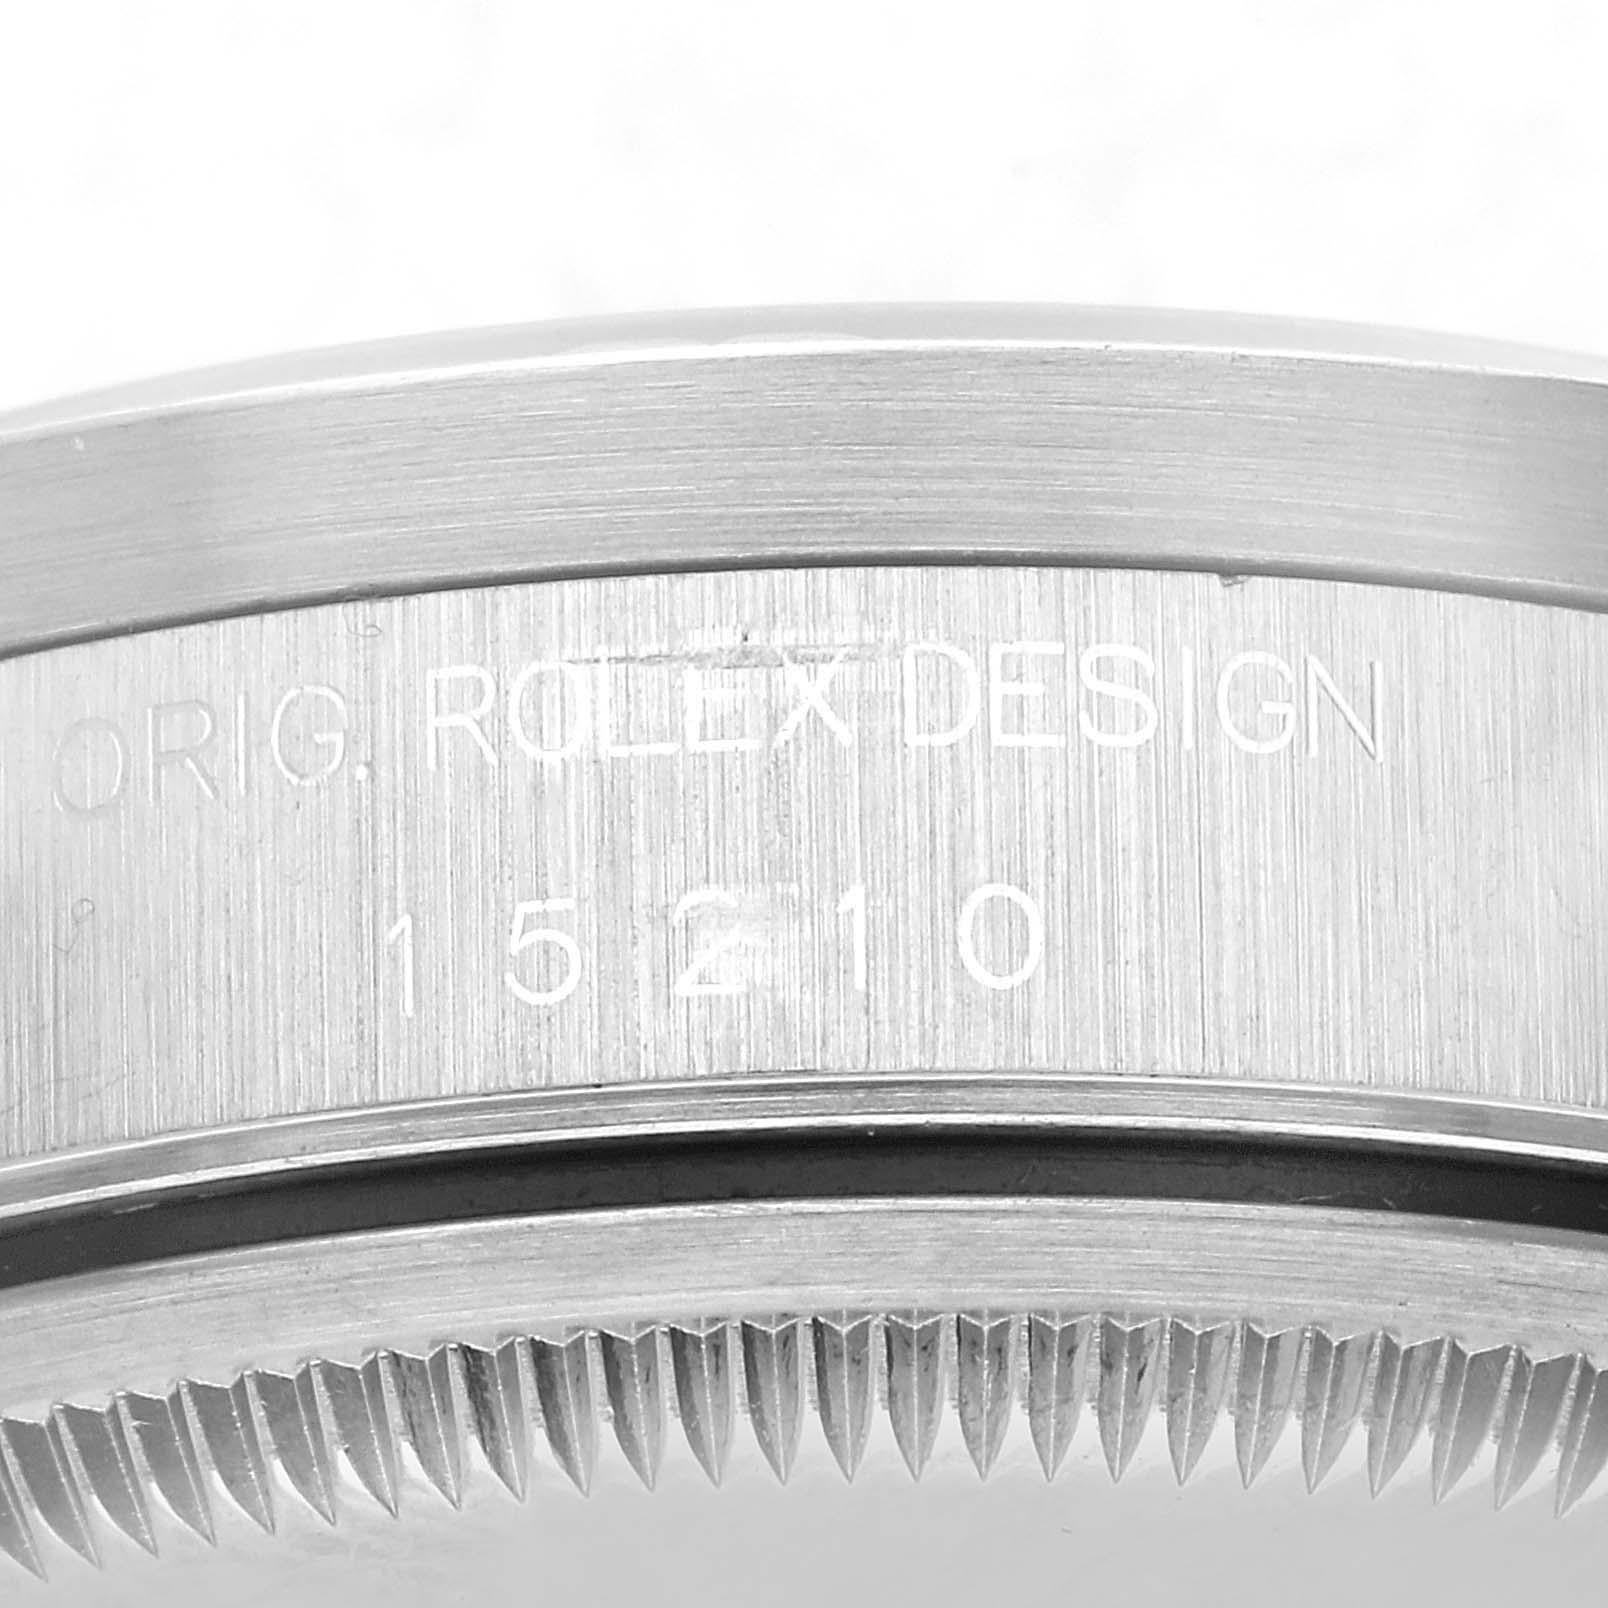 Rolex Date Cadran argenté Lunette tournante en acier Montre homme 15210. Mouvement automatique à remontage automatique, officiellement certifié chronomètre. Boîtier oyster en acier inoxydable de 34 mm de diamètre. Logo Rolex sur la couronne. Lunette